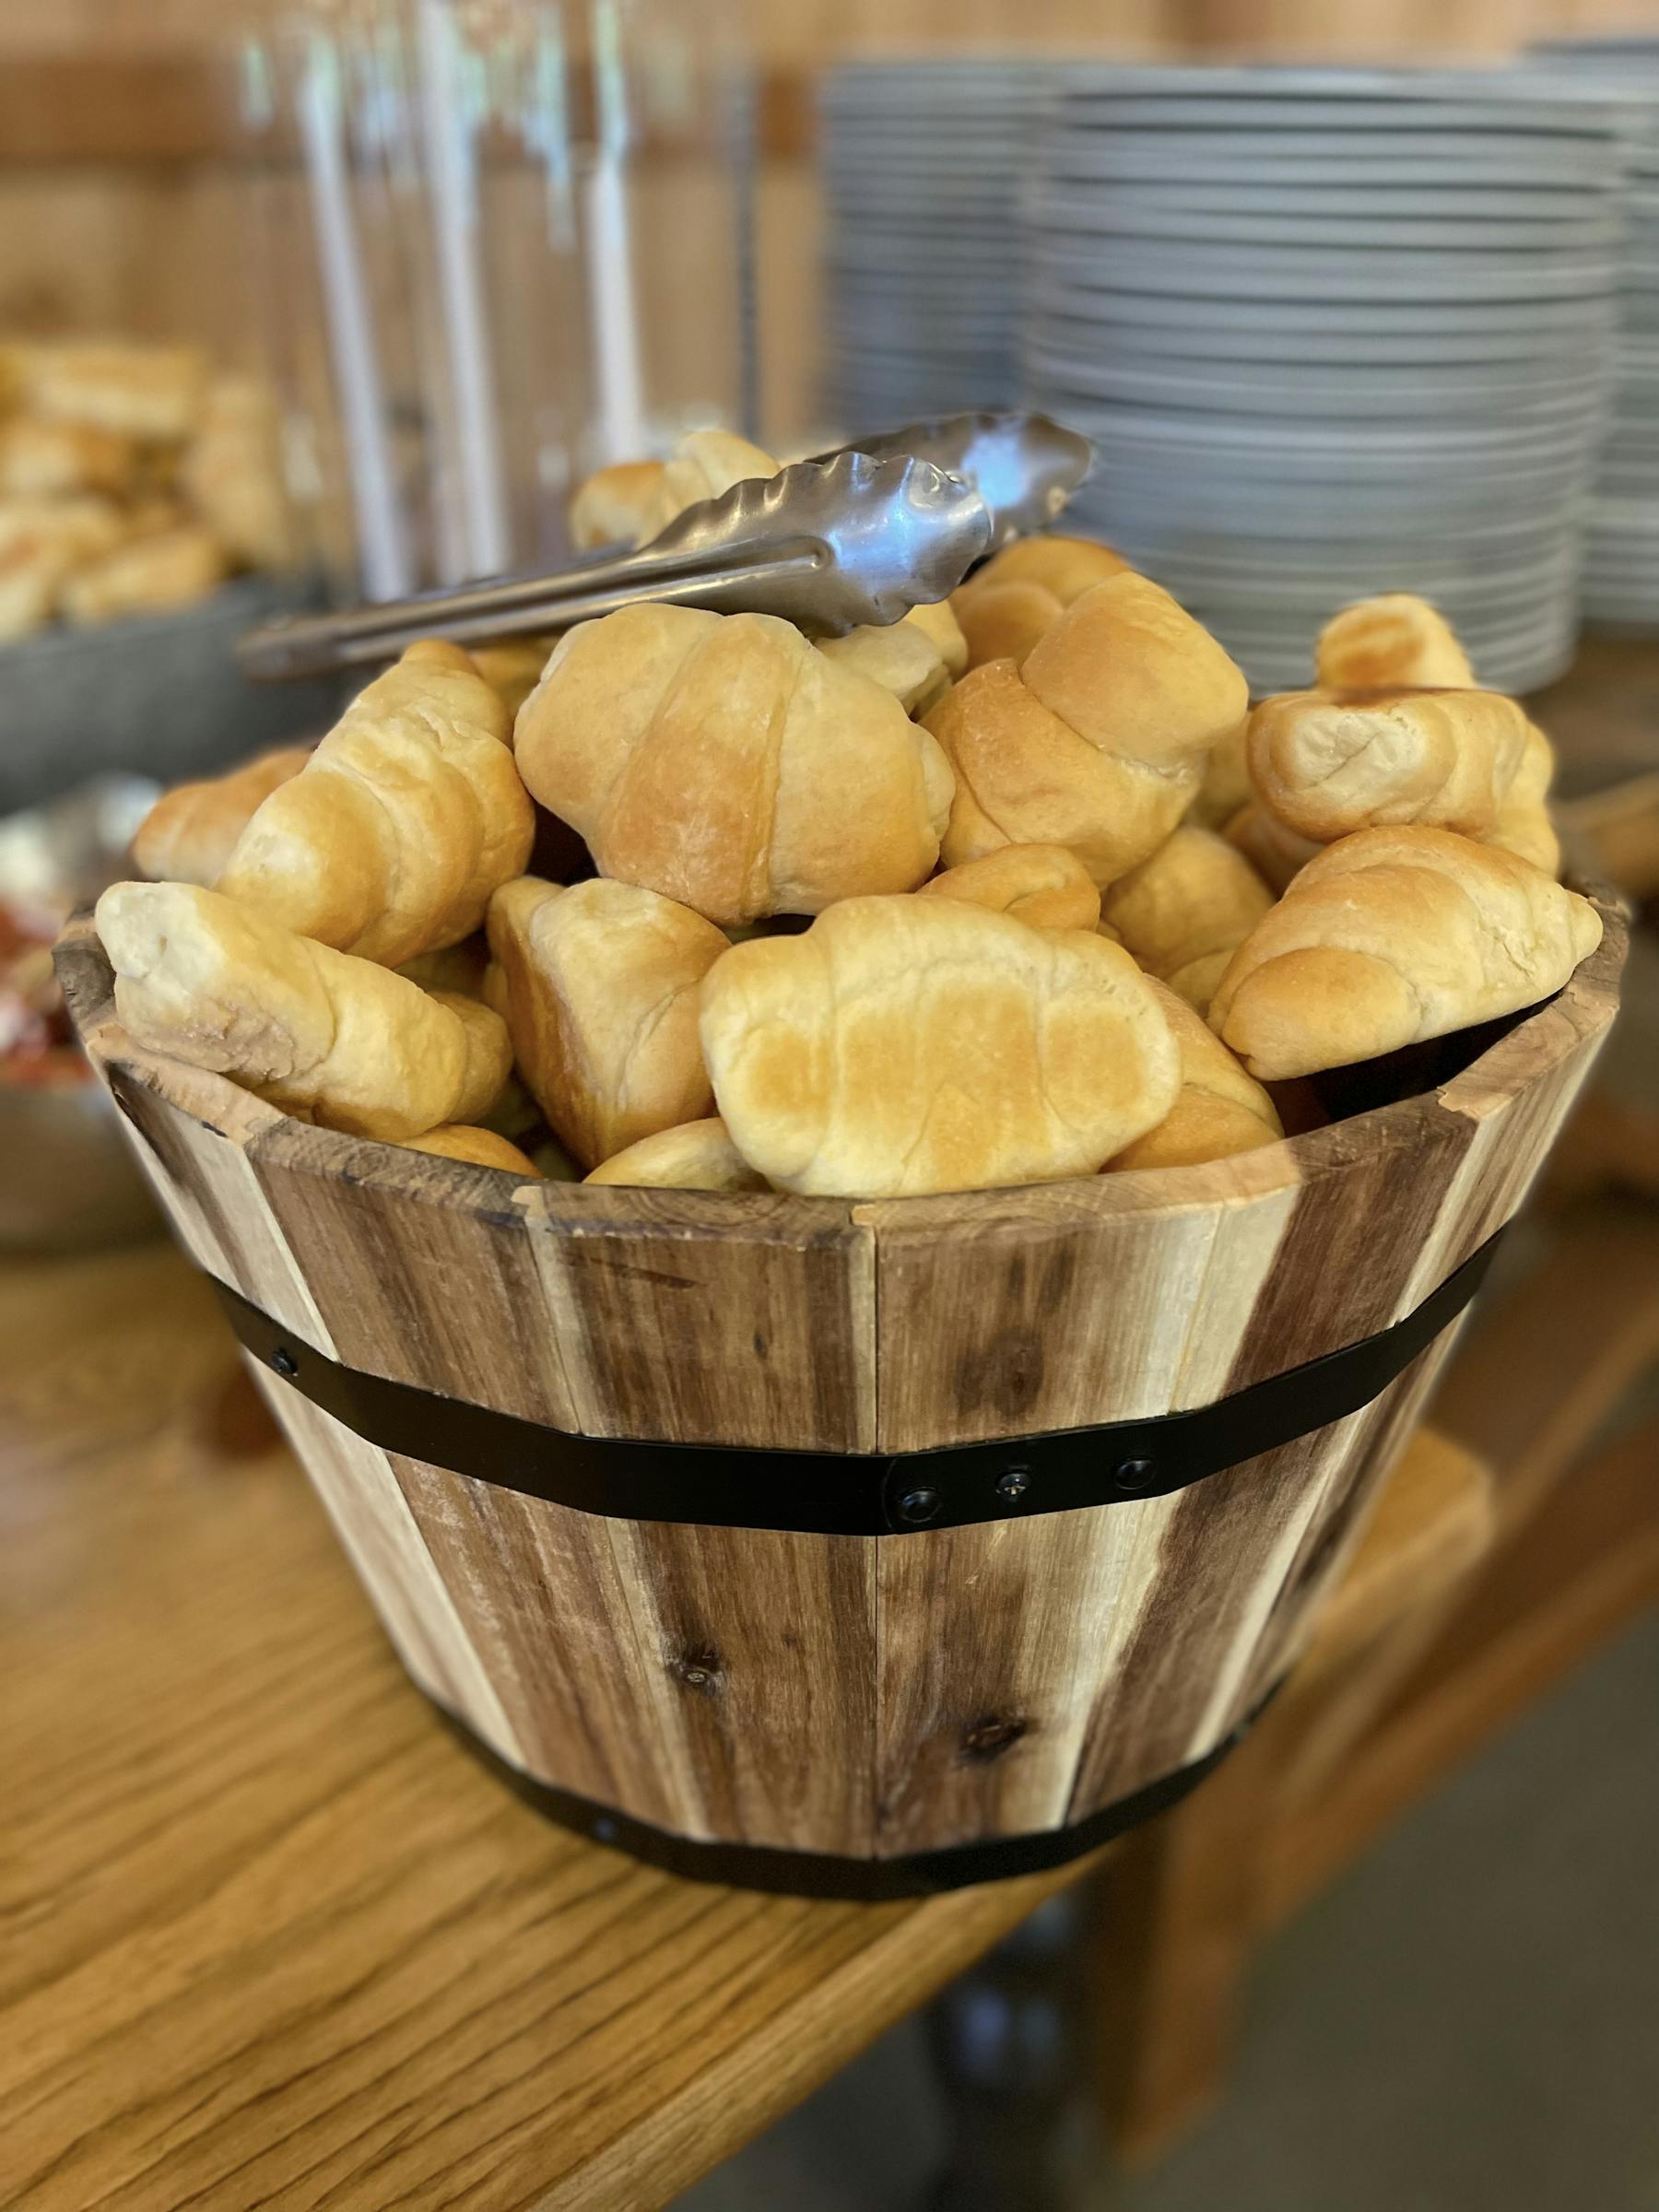 a basket of bread